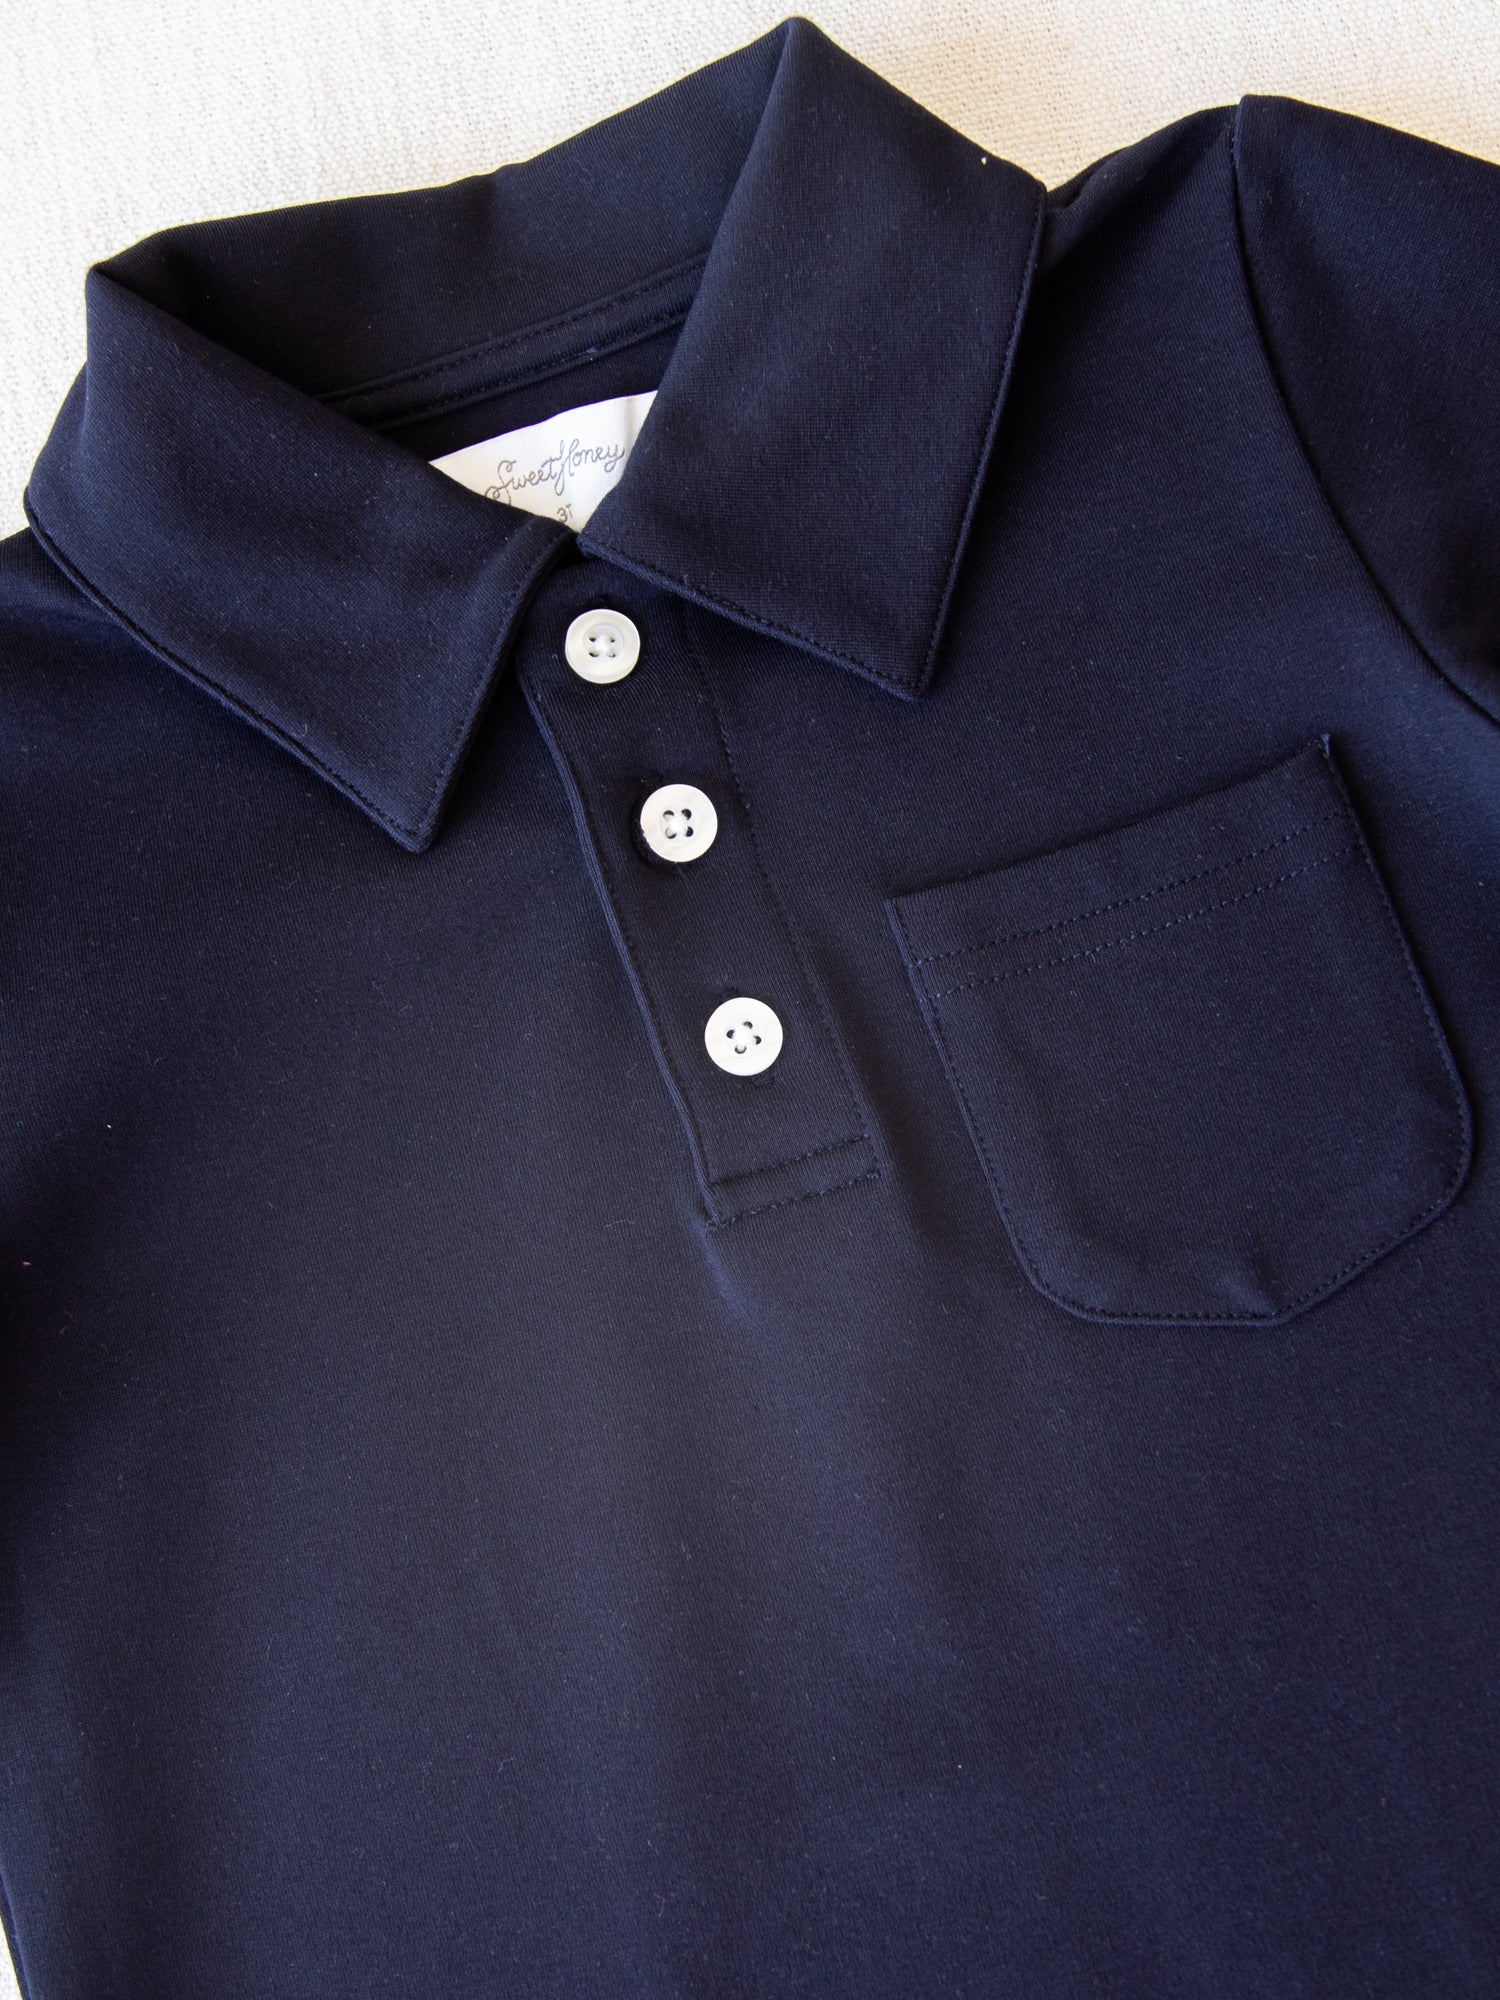 Shirt Polo - SweetHoney Sky Night Clothing -